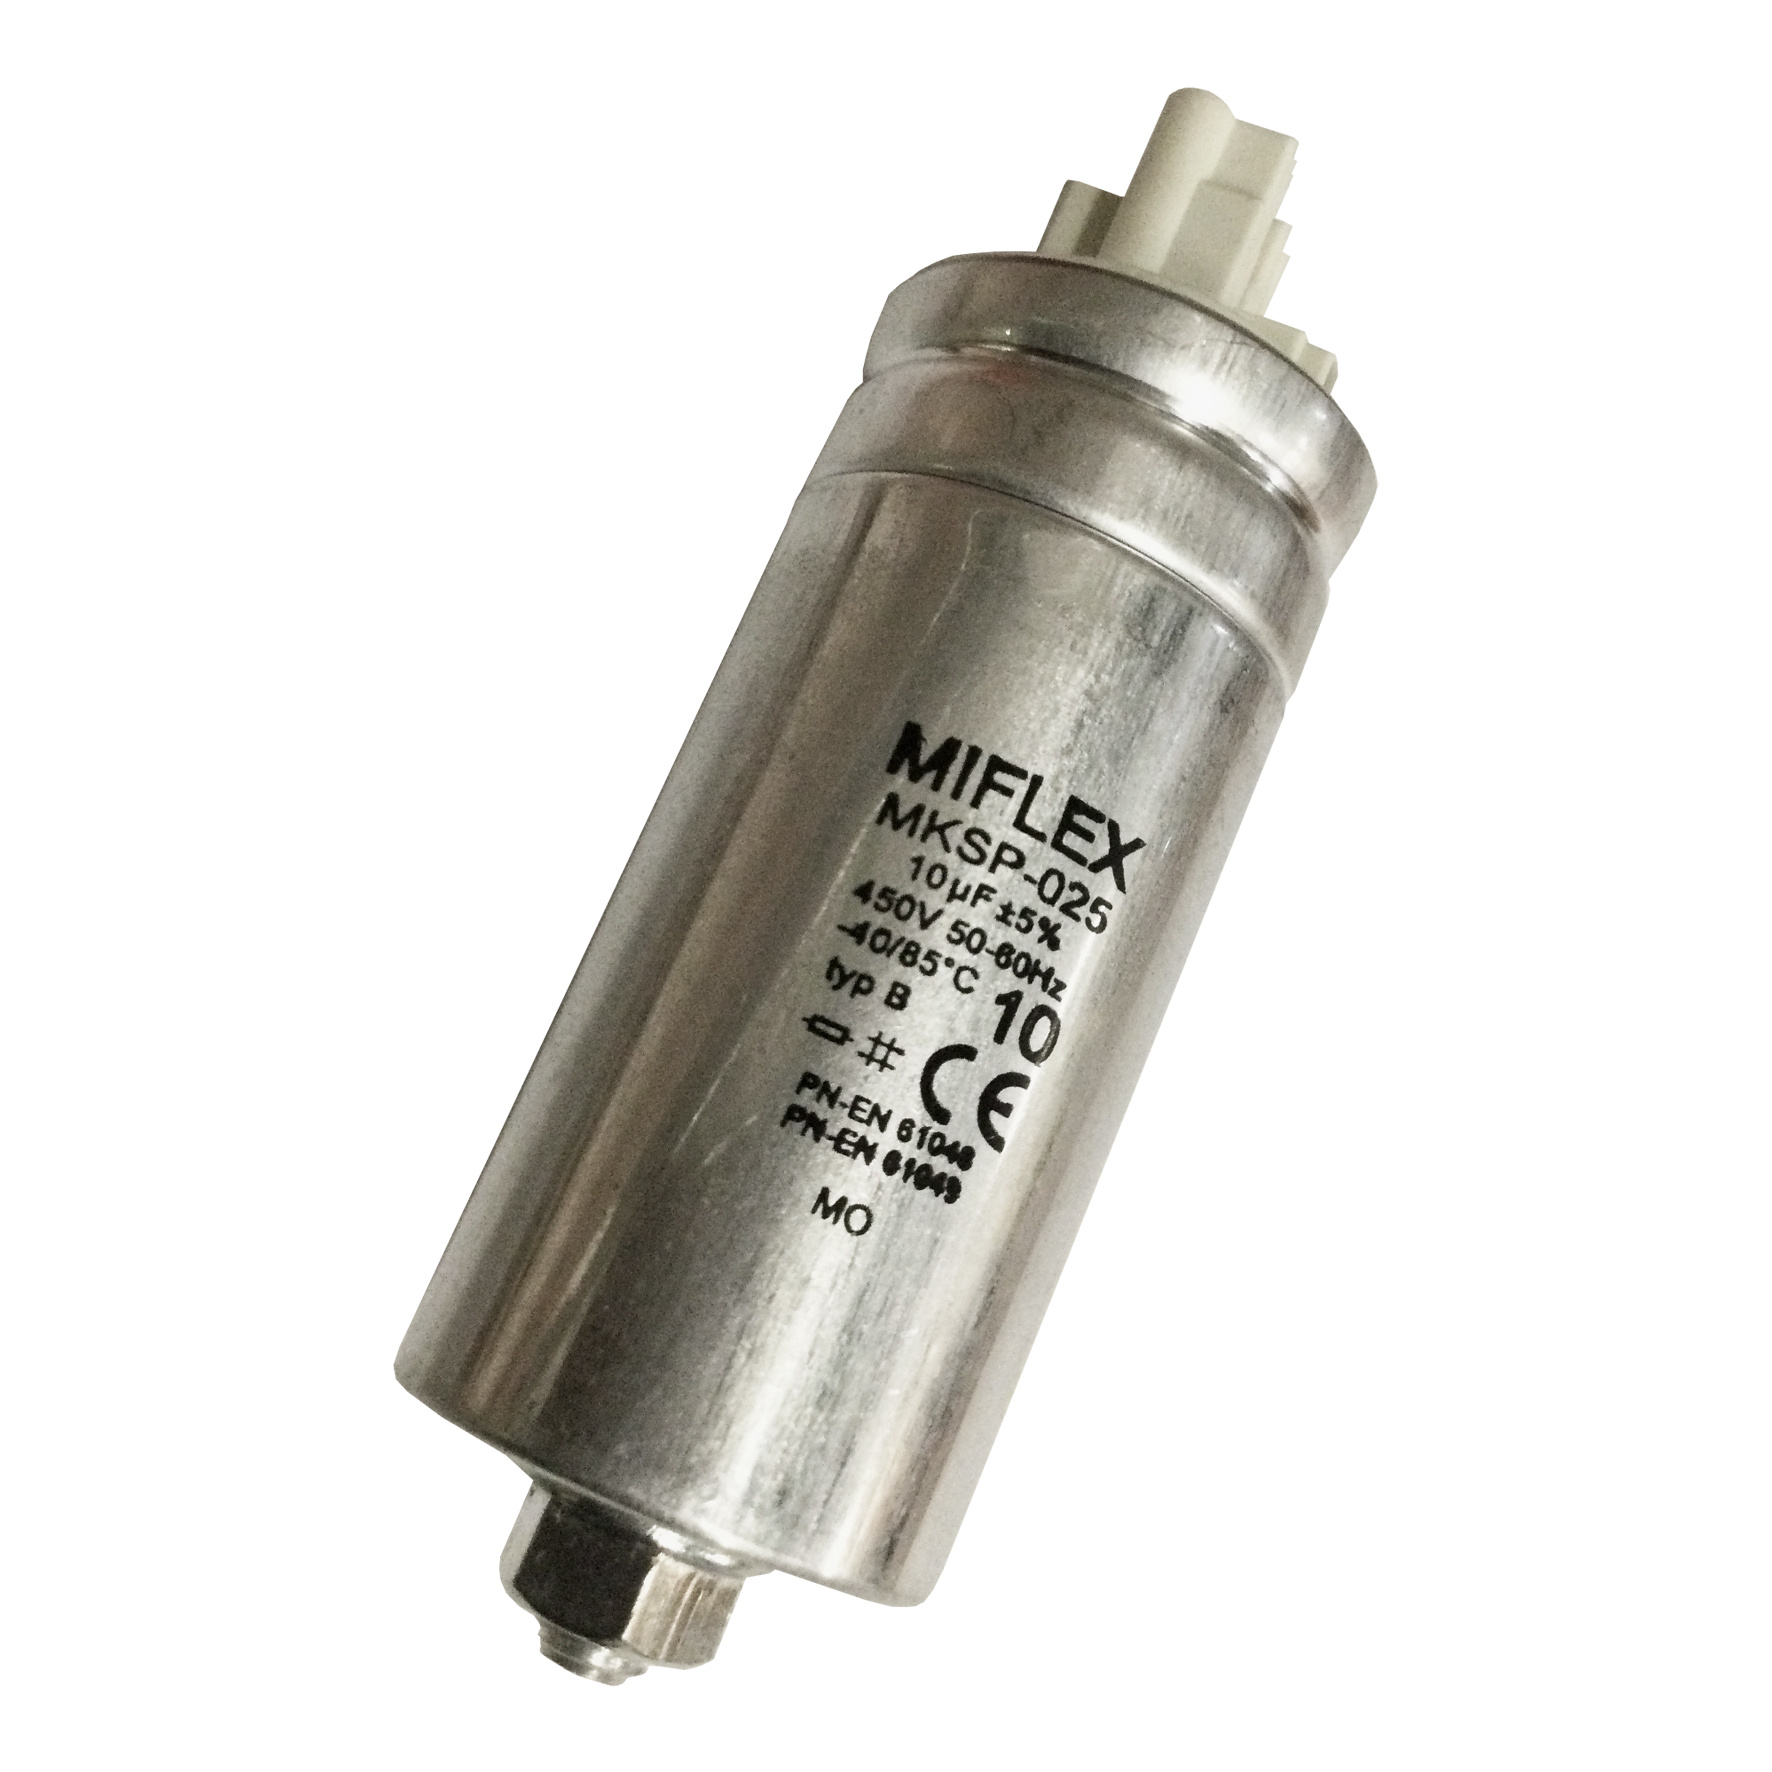 Capacitor 10µF 450V Aluminum casing M8x10